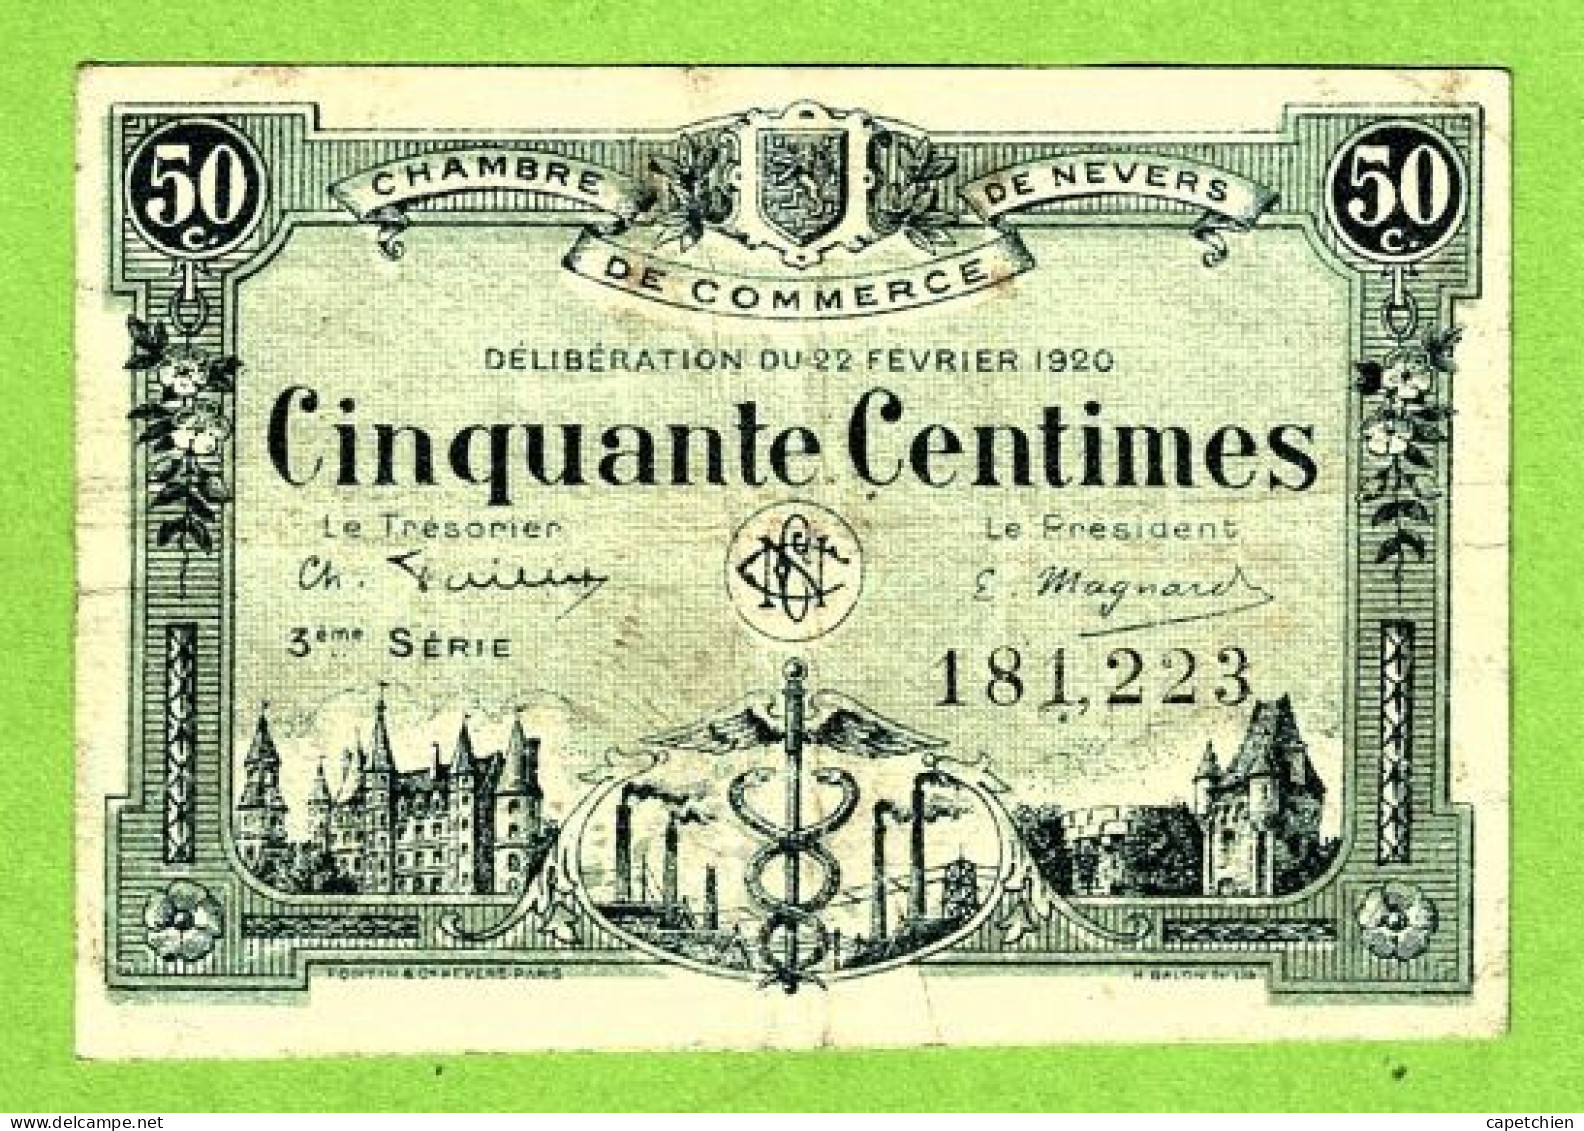 FRANCE /  CHAMBRE De COMMERCE De NEVERS / 50 CENTIMES / 22 FEVRIER 1920  N° 181,223 / 3 ème SERIE - Chambre De Commerce